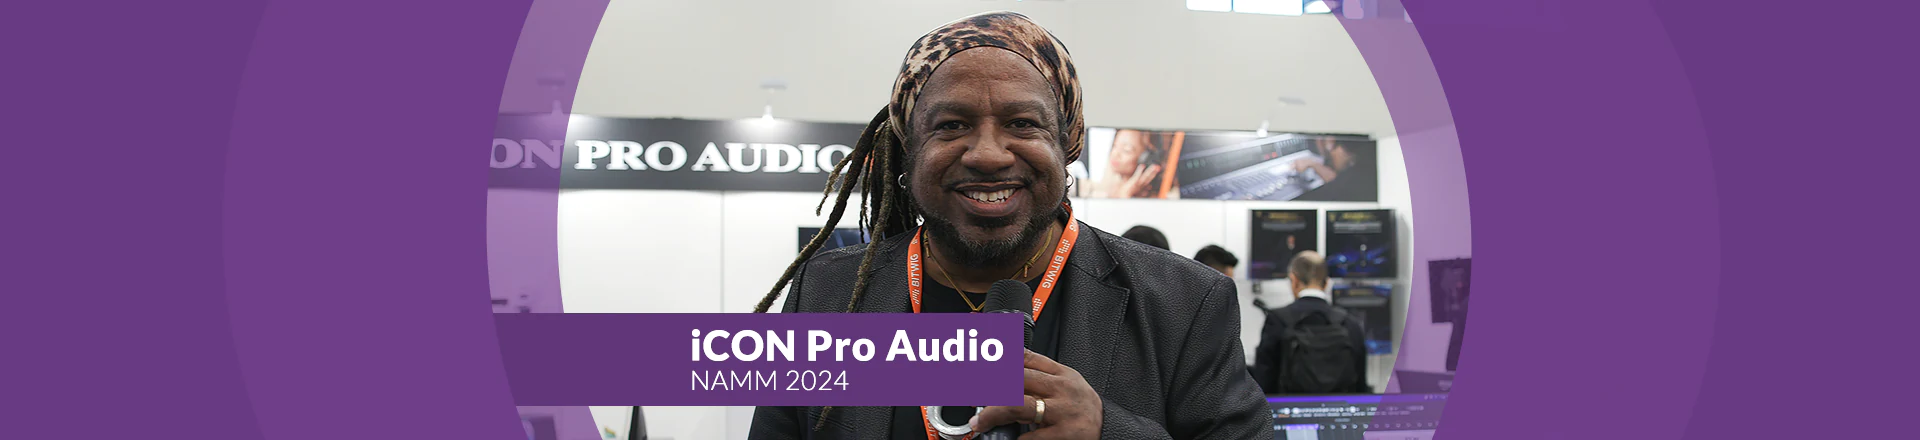 iCON Pro Audio na NAMM 2024 – sporo ciekawego sprzętu